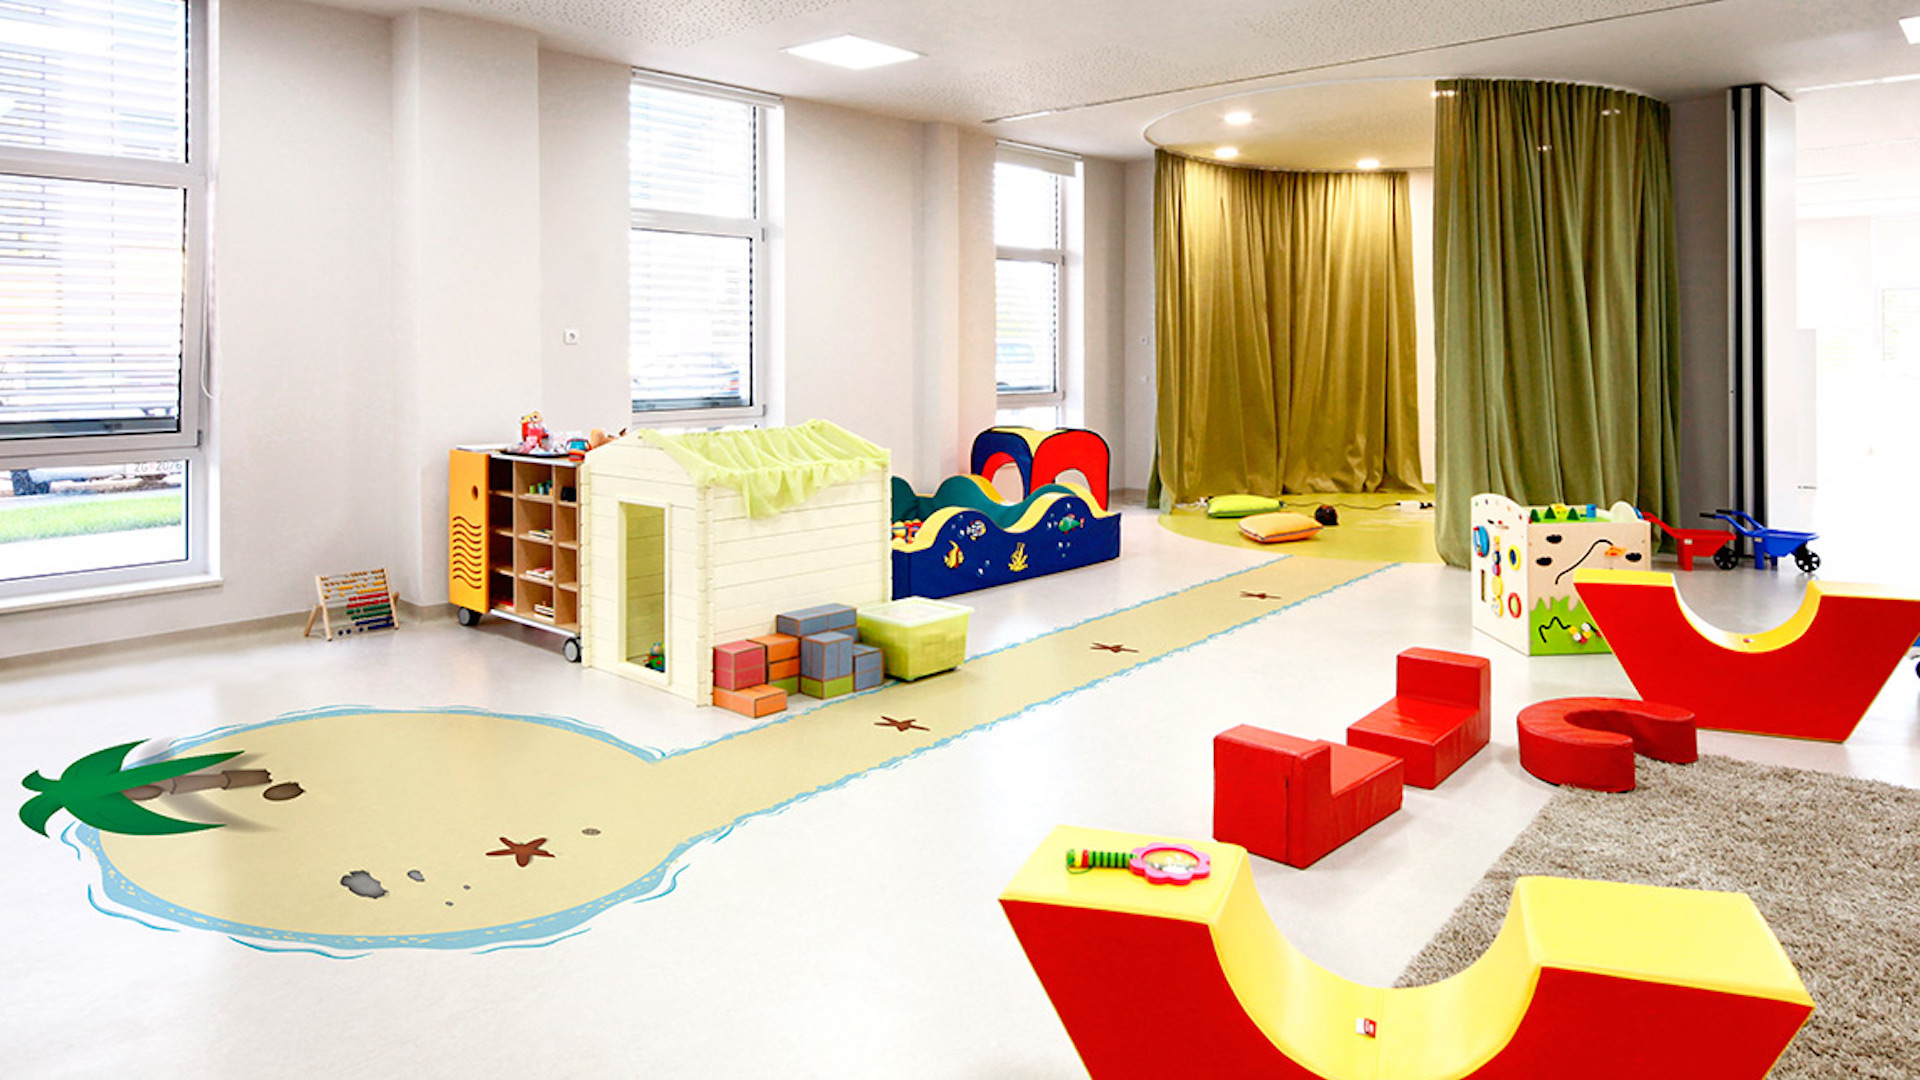 Une salle de classe très colorée avec dessins enfantins au sol